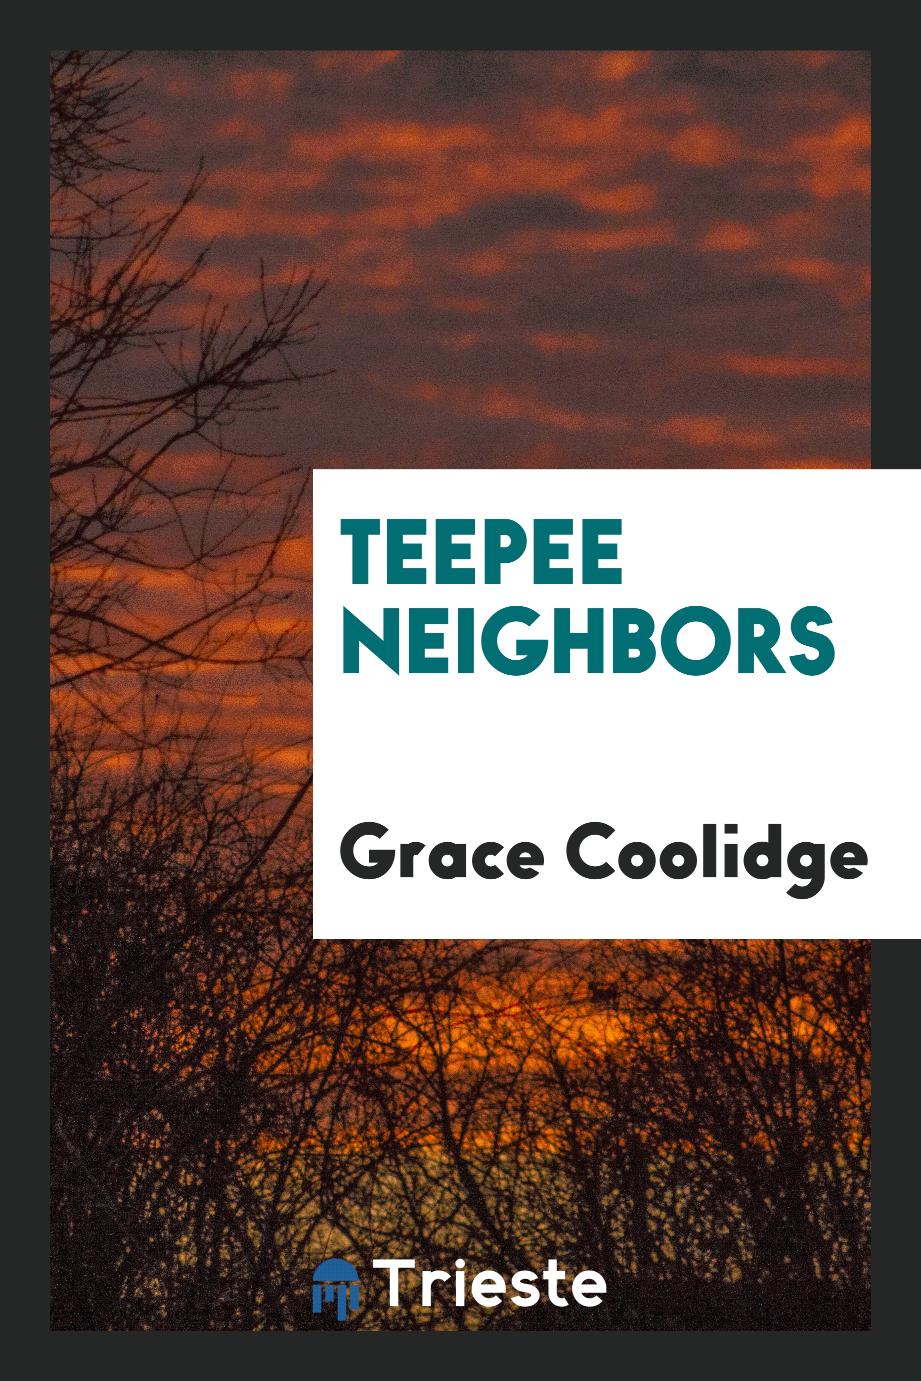 Teepee neighbors